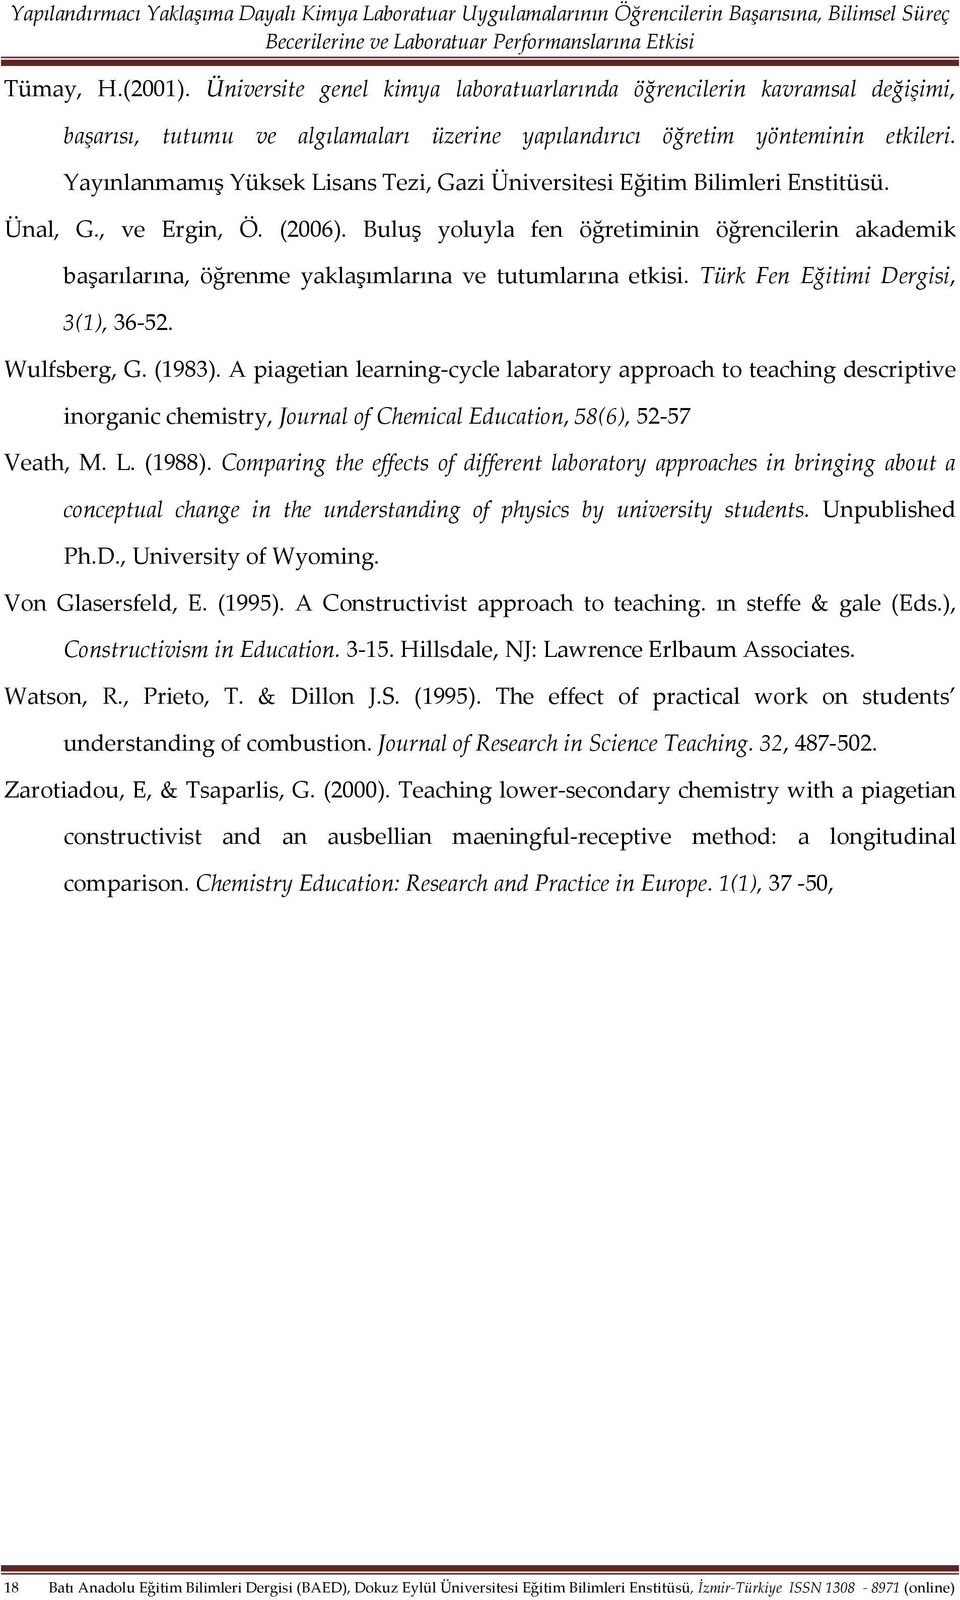 Buluş yoluyla fen öğretiminin öğrencilerin akademik başarılarına, öğrenme yaklaşımlarına ve tutumlarına etkisi. Türk Fen Eğitimi Dergisi, 3(1), 36-52. Wulfsberg, G. (1983).